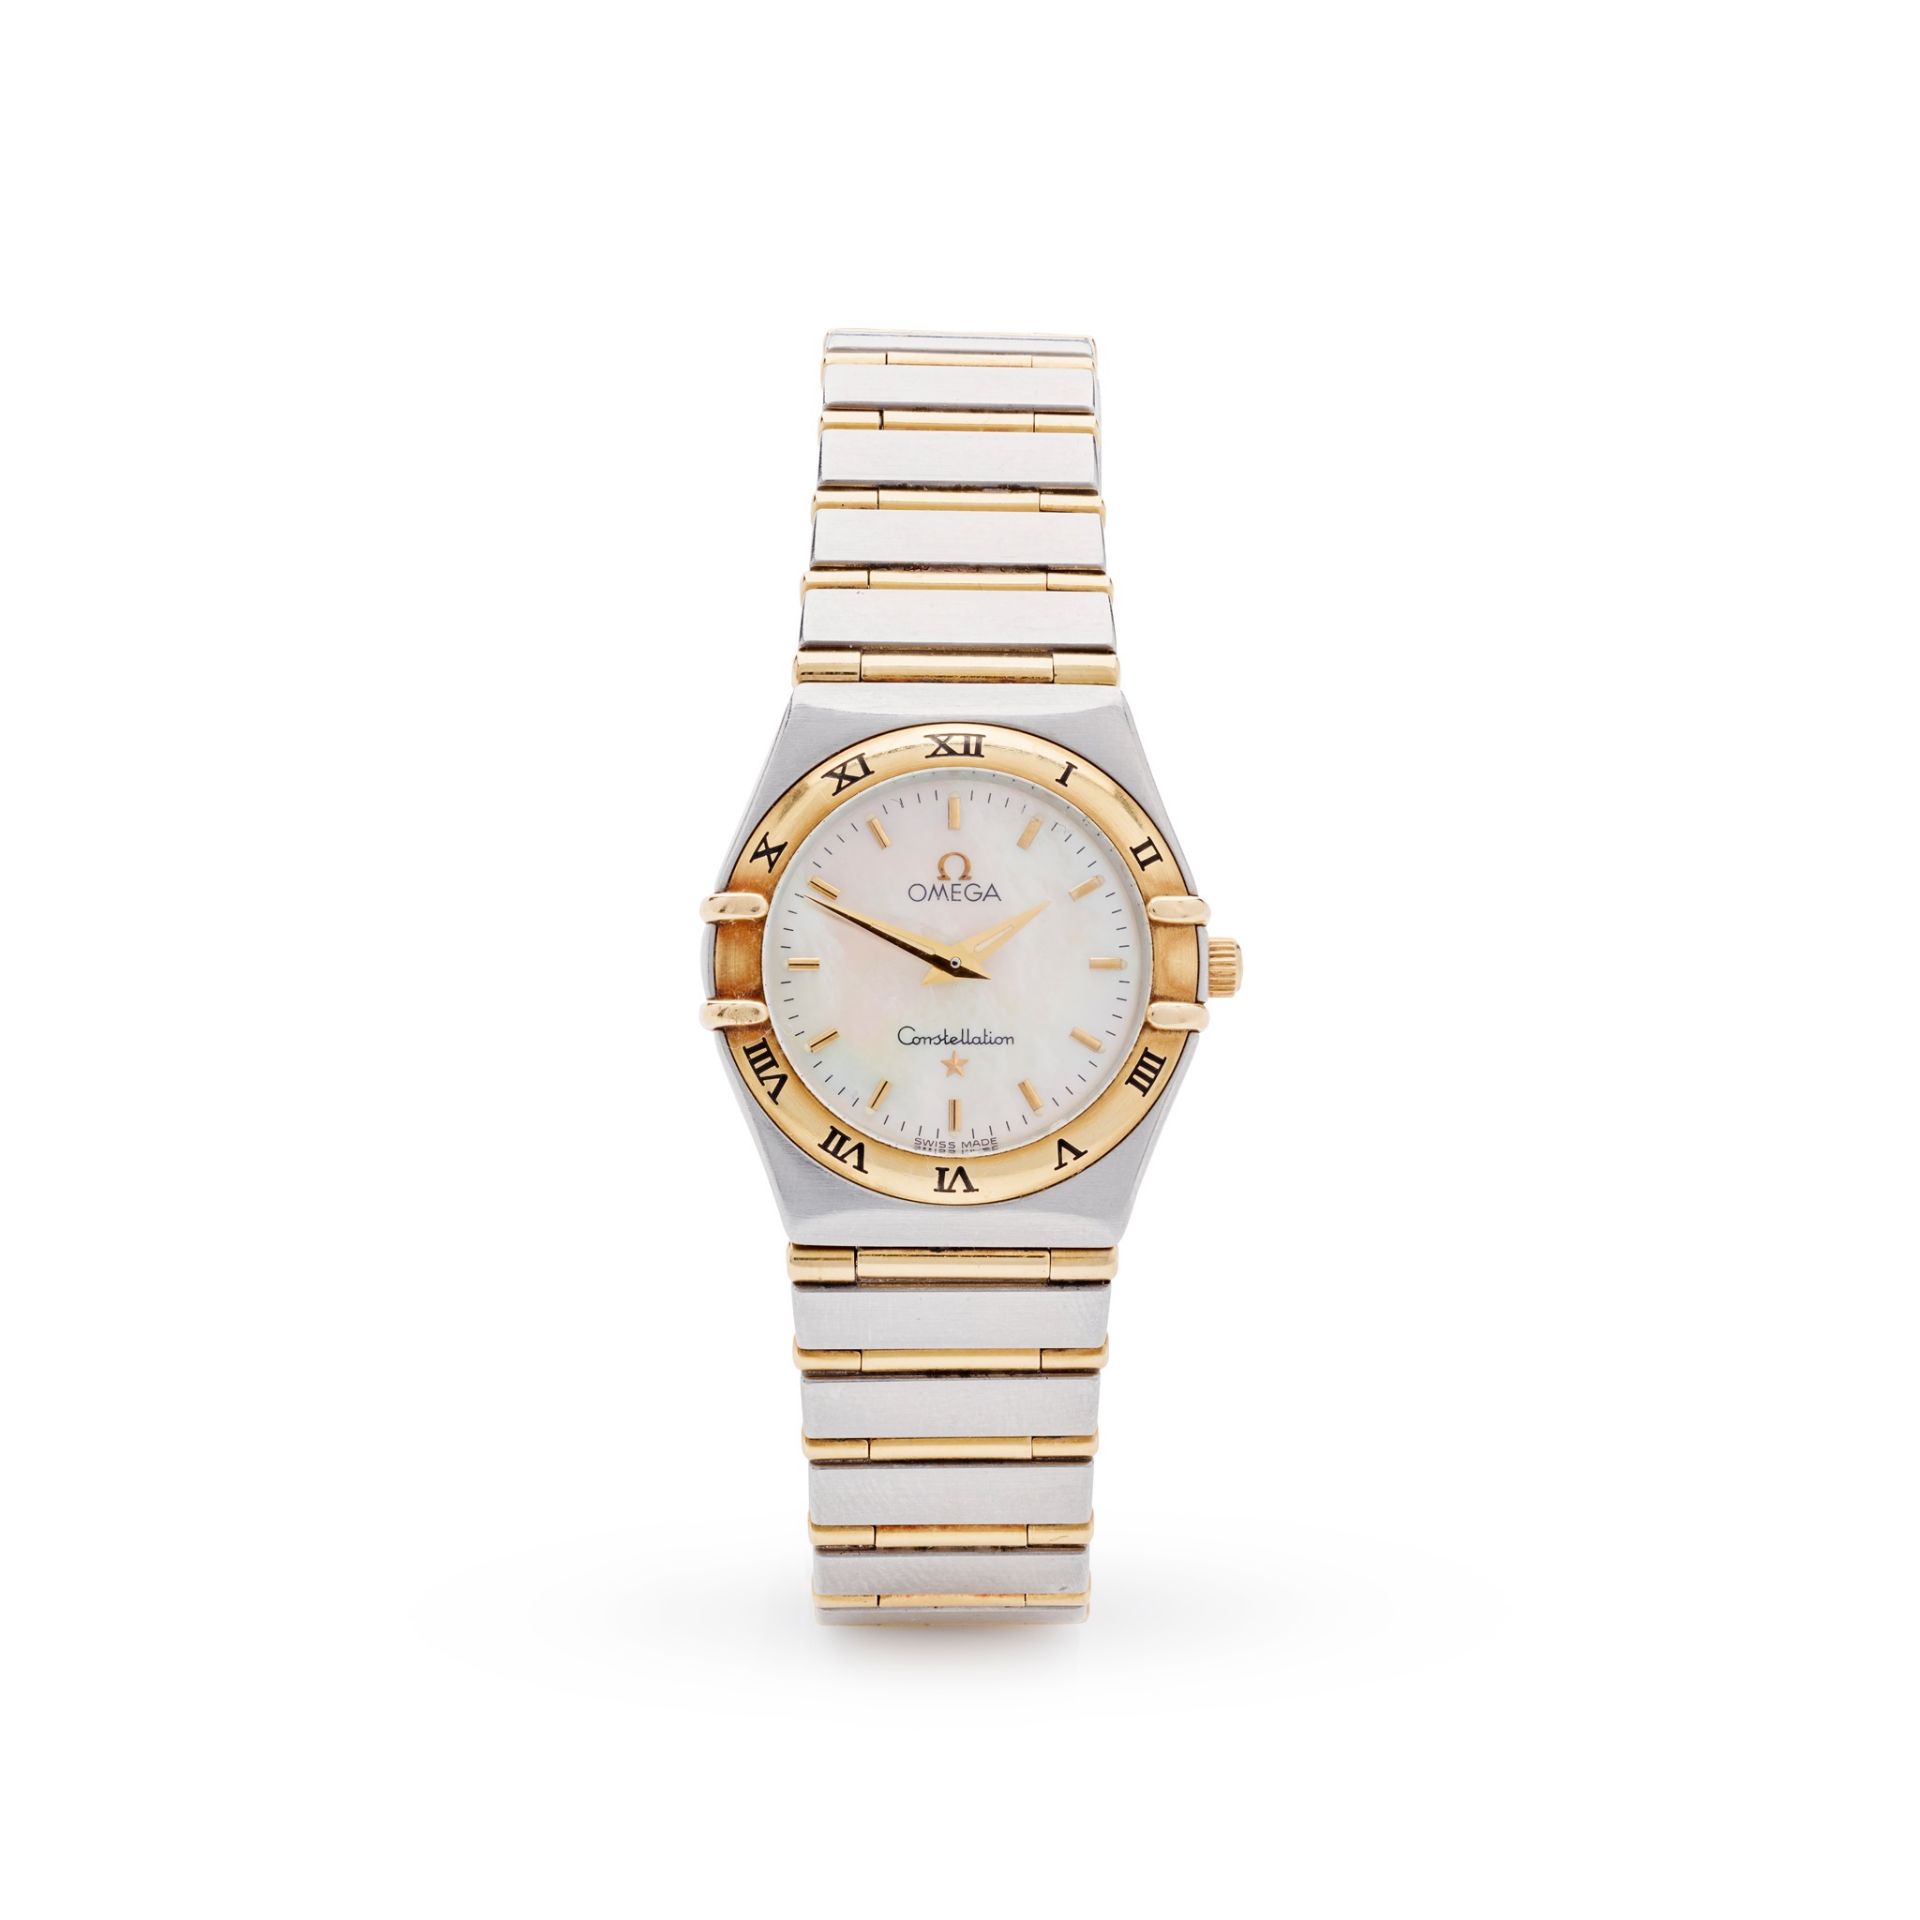 Omega: a bi-colour wrist watch